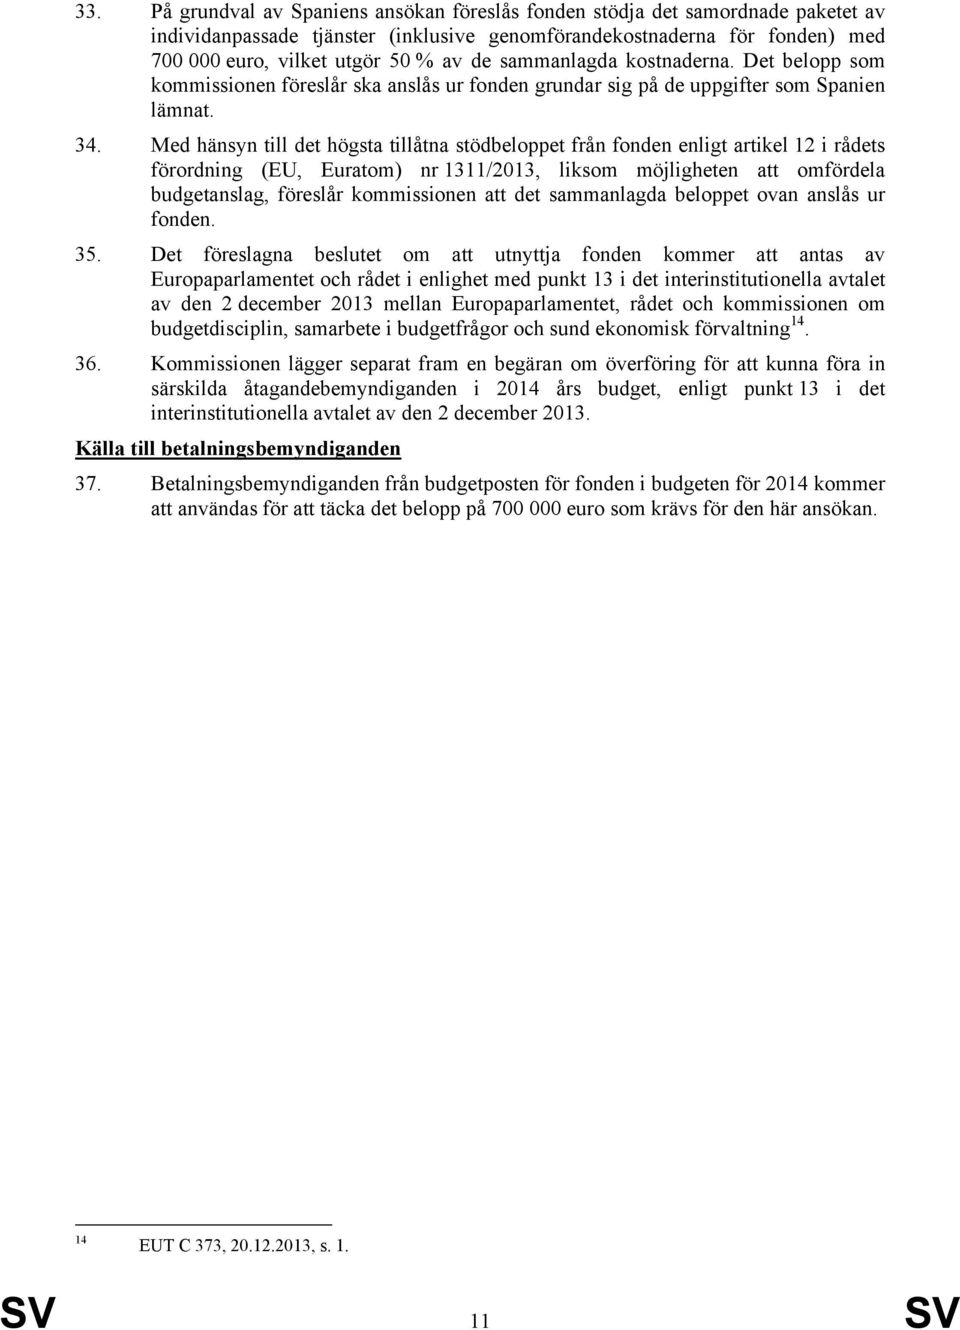 Med hänsyn till det högsta tillåtna stödbeloppet från fonden enligt artikel 12 i rådets förordning (EU, Euratom) nr 1311/2013, liksom möjligheten att omfördela budgetanslag, föreslår kommissionen att